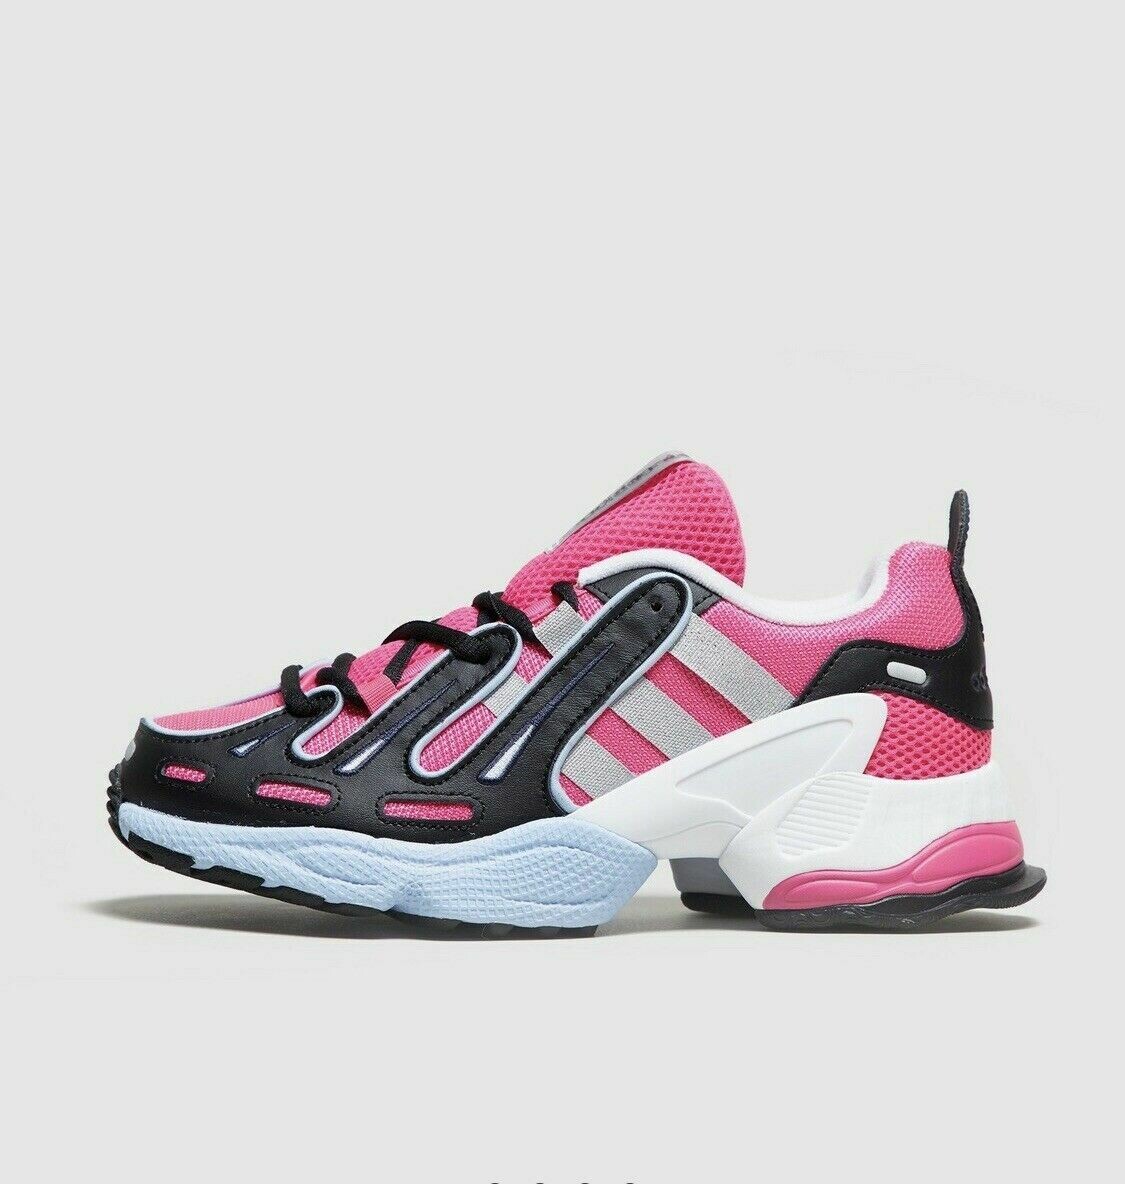 Adidas Originals EQT - Pink Twist